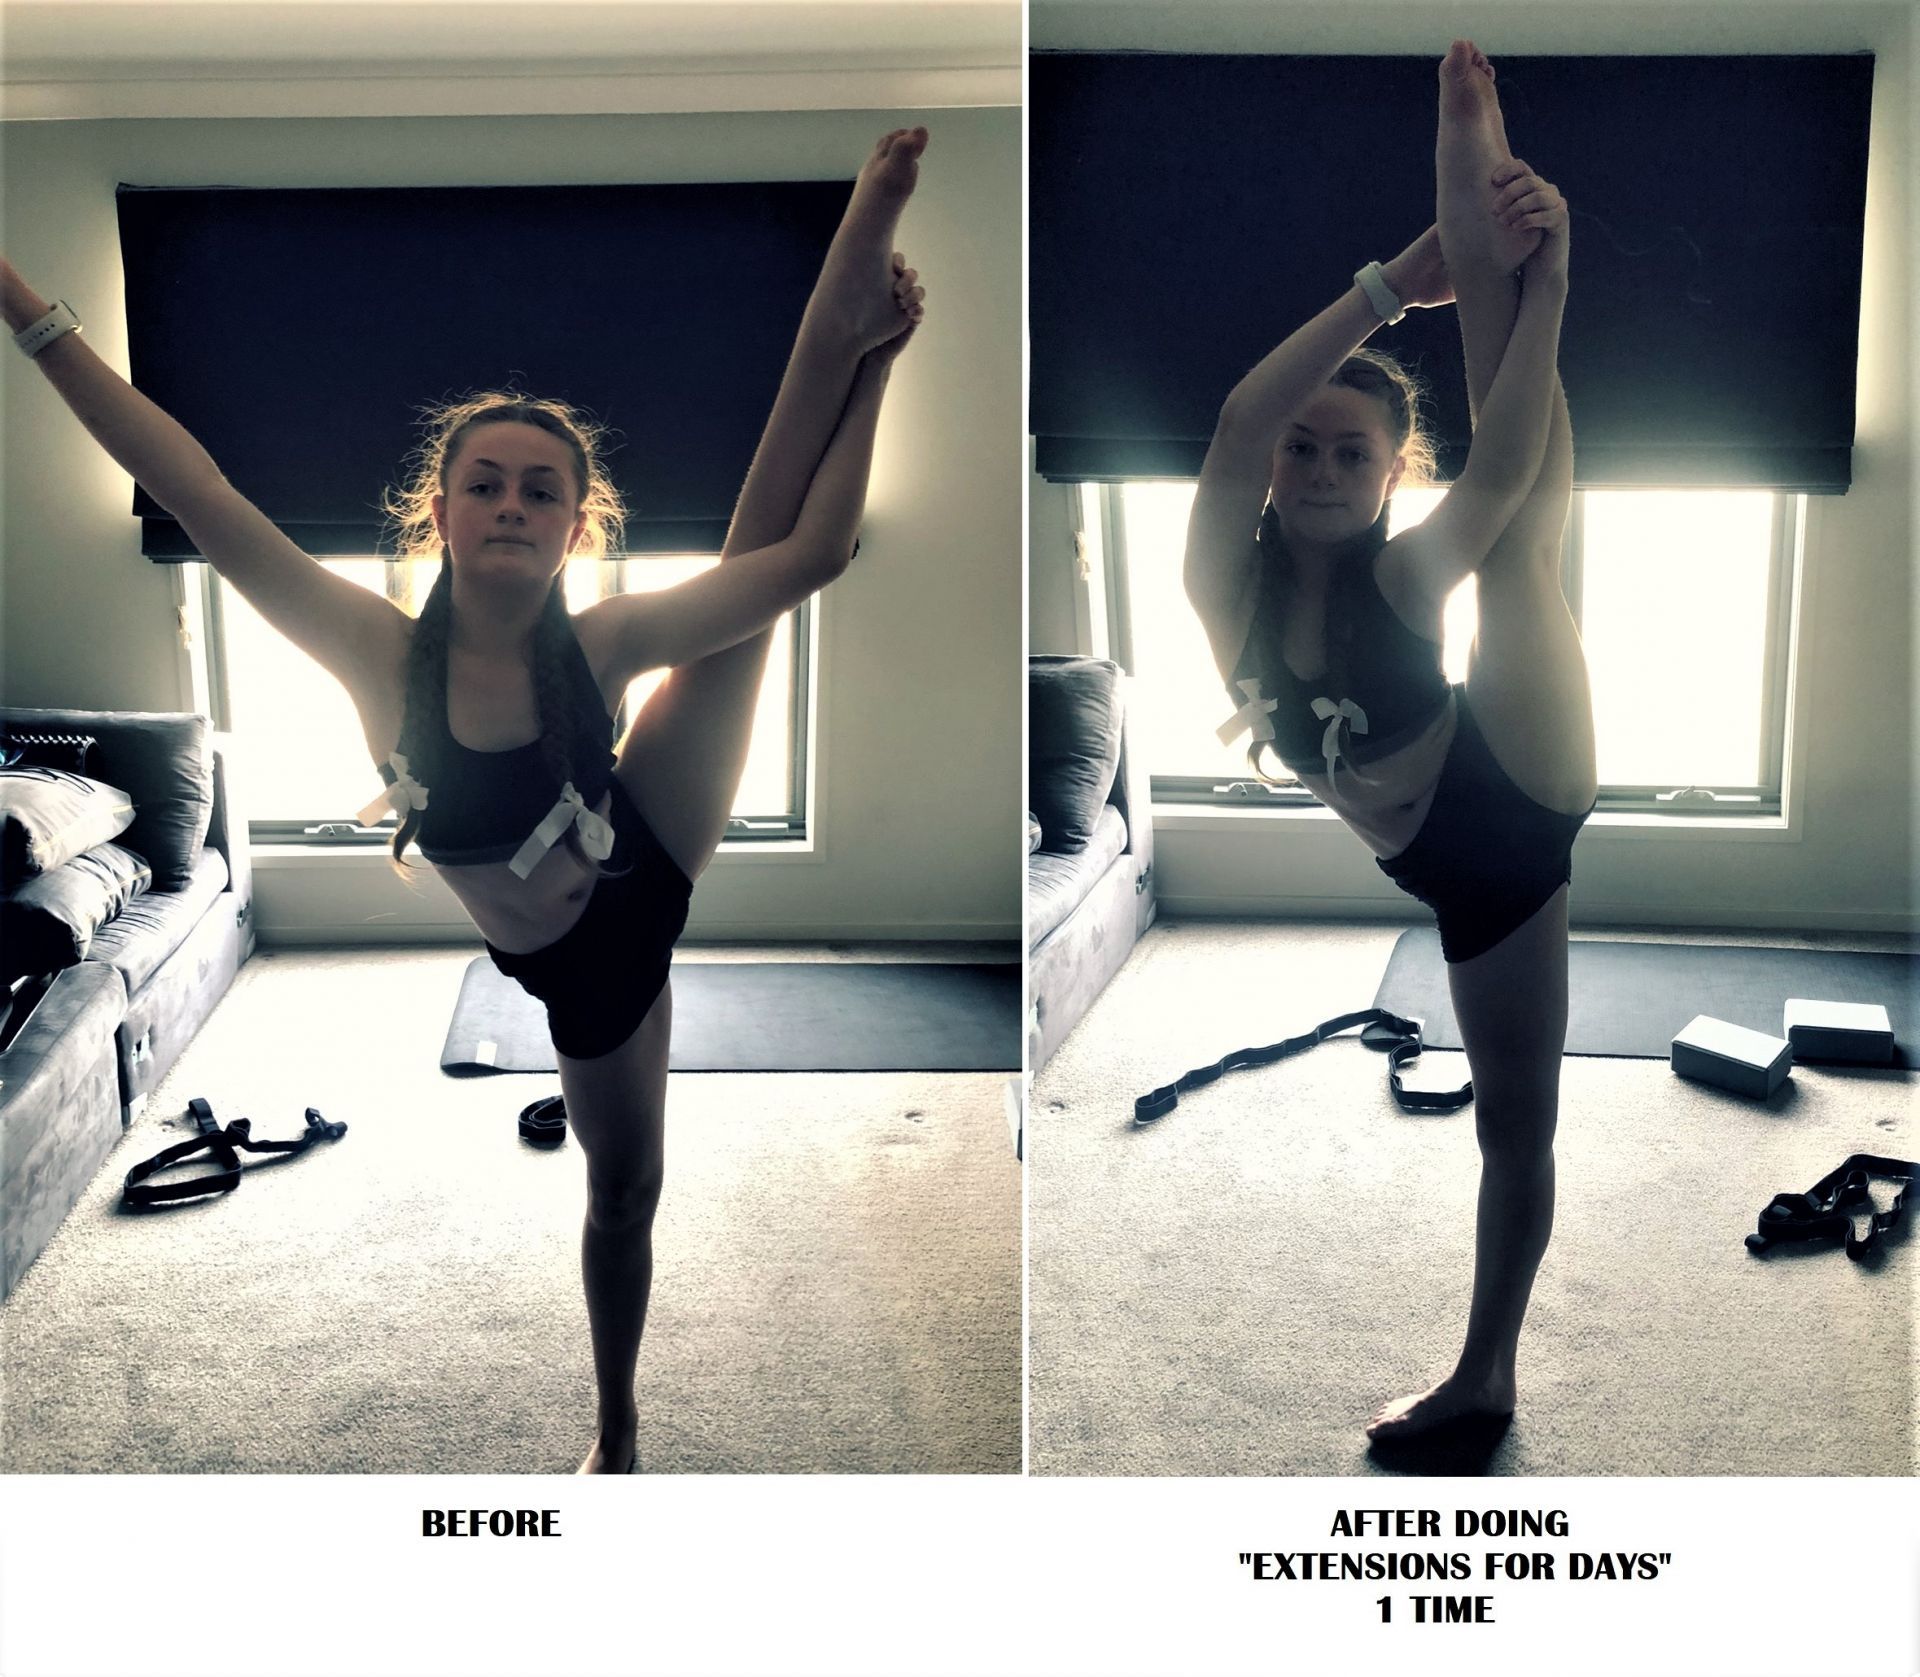 More flexibility progress for leg holds from dancer